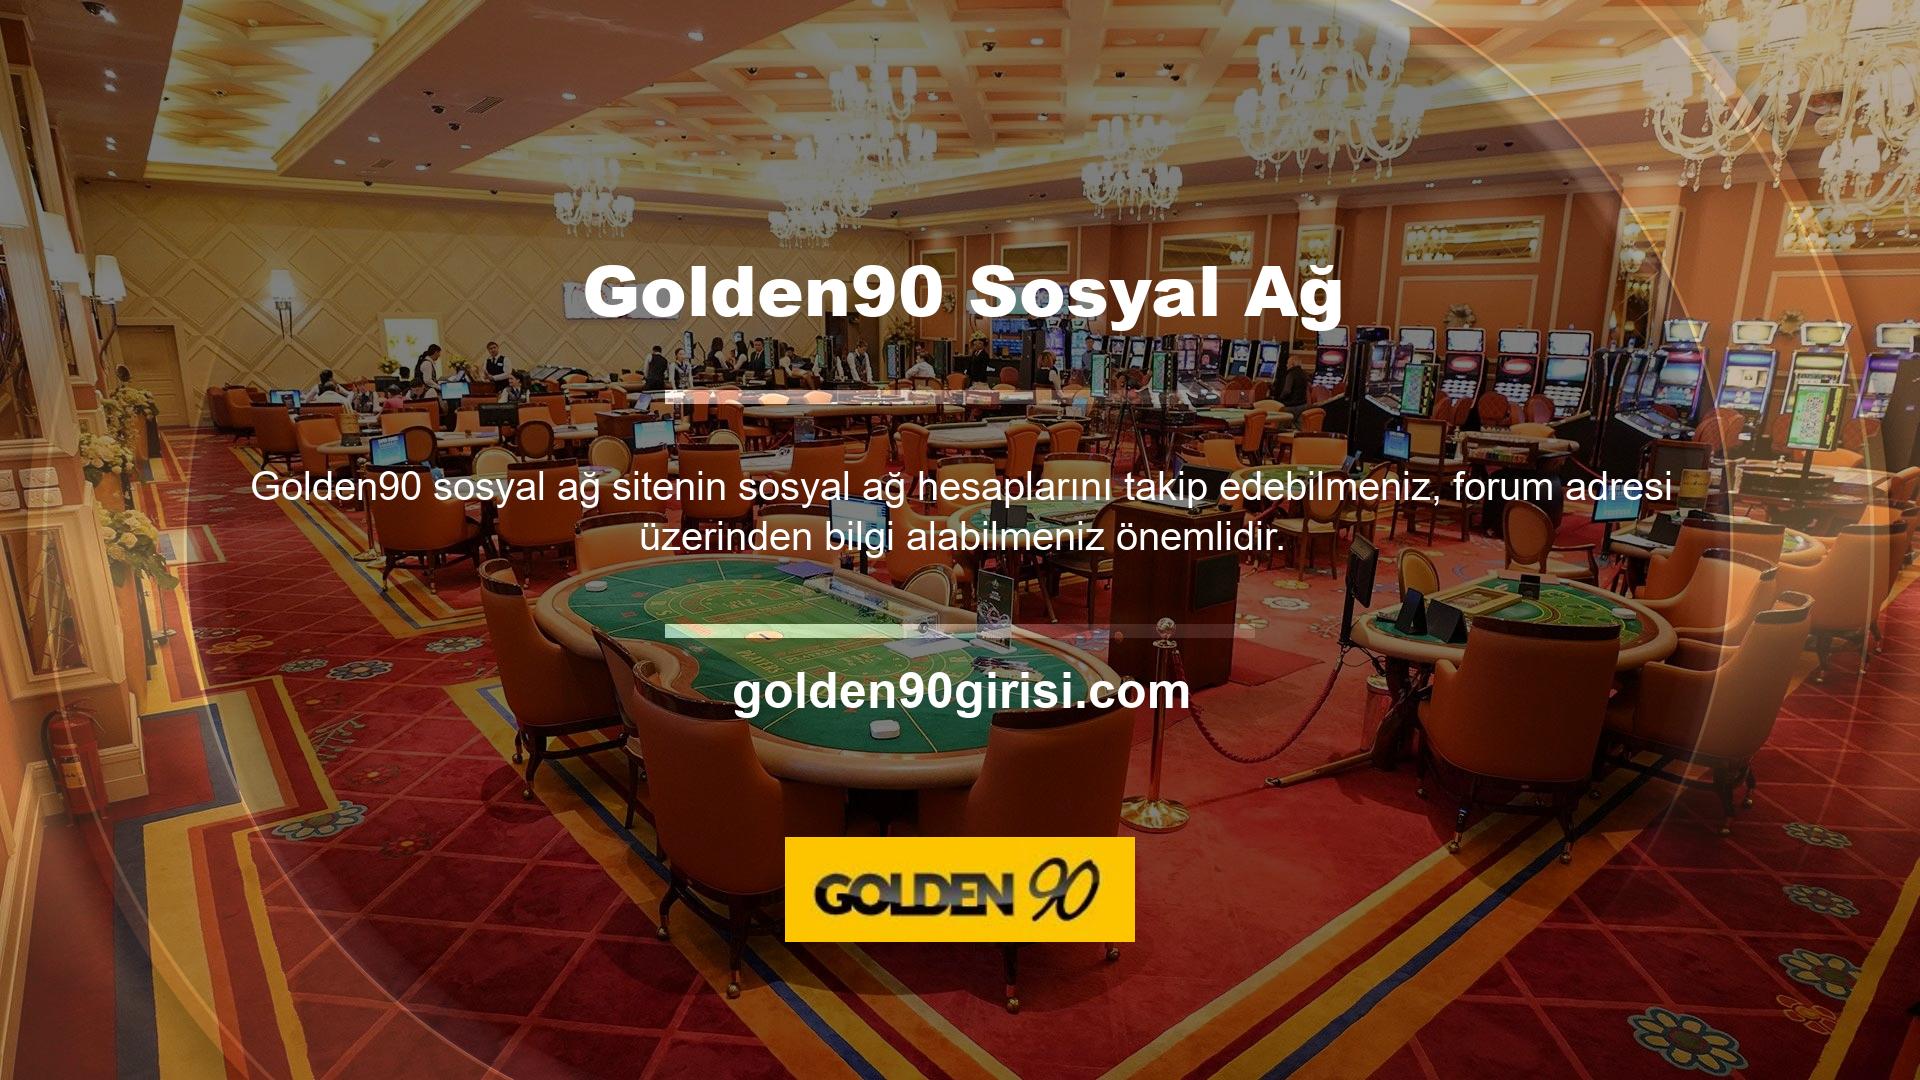 Golden90 Hakkında Öncelikle Golden90 sitesinin Türkiye’de uzun yıllardır faaliyet gösteren ve kesintisiz bahis hizmeti veren bir site olduğunu varsayalım